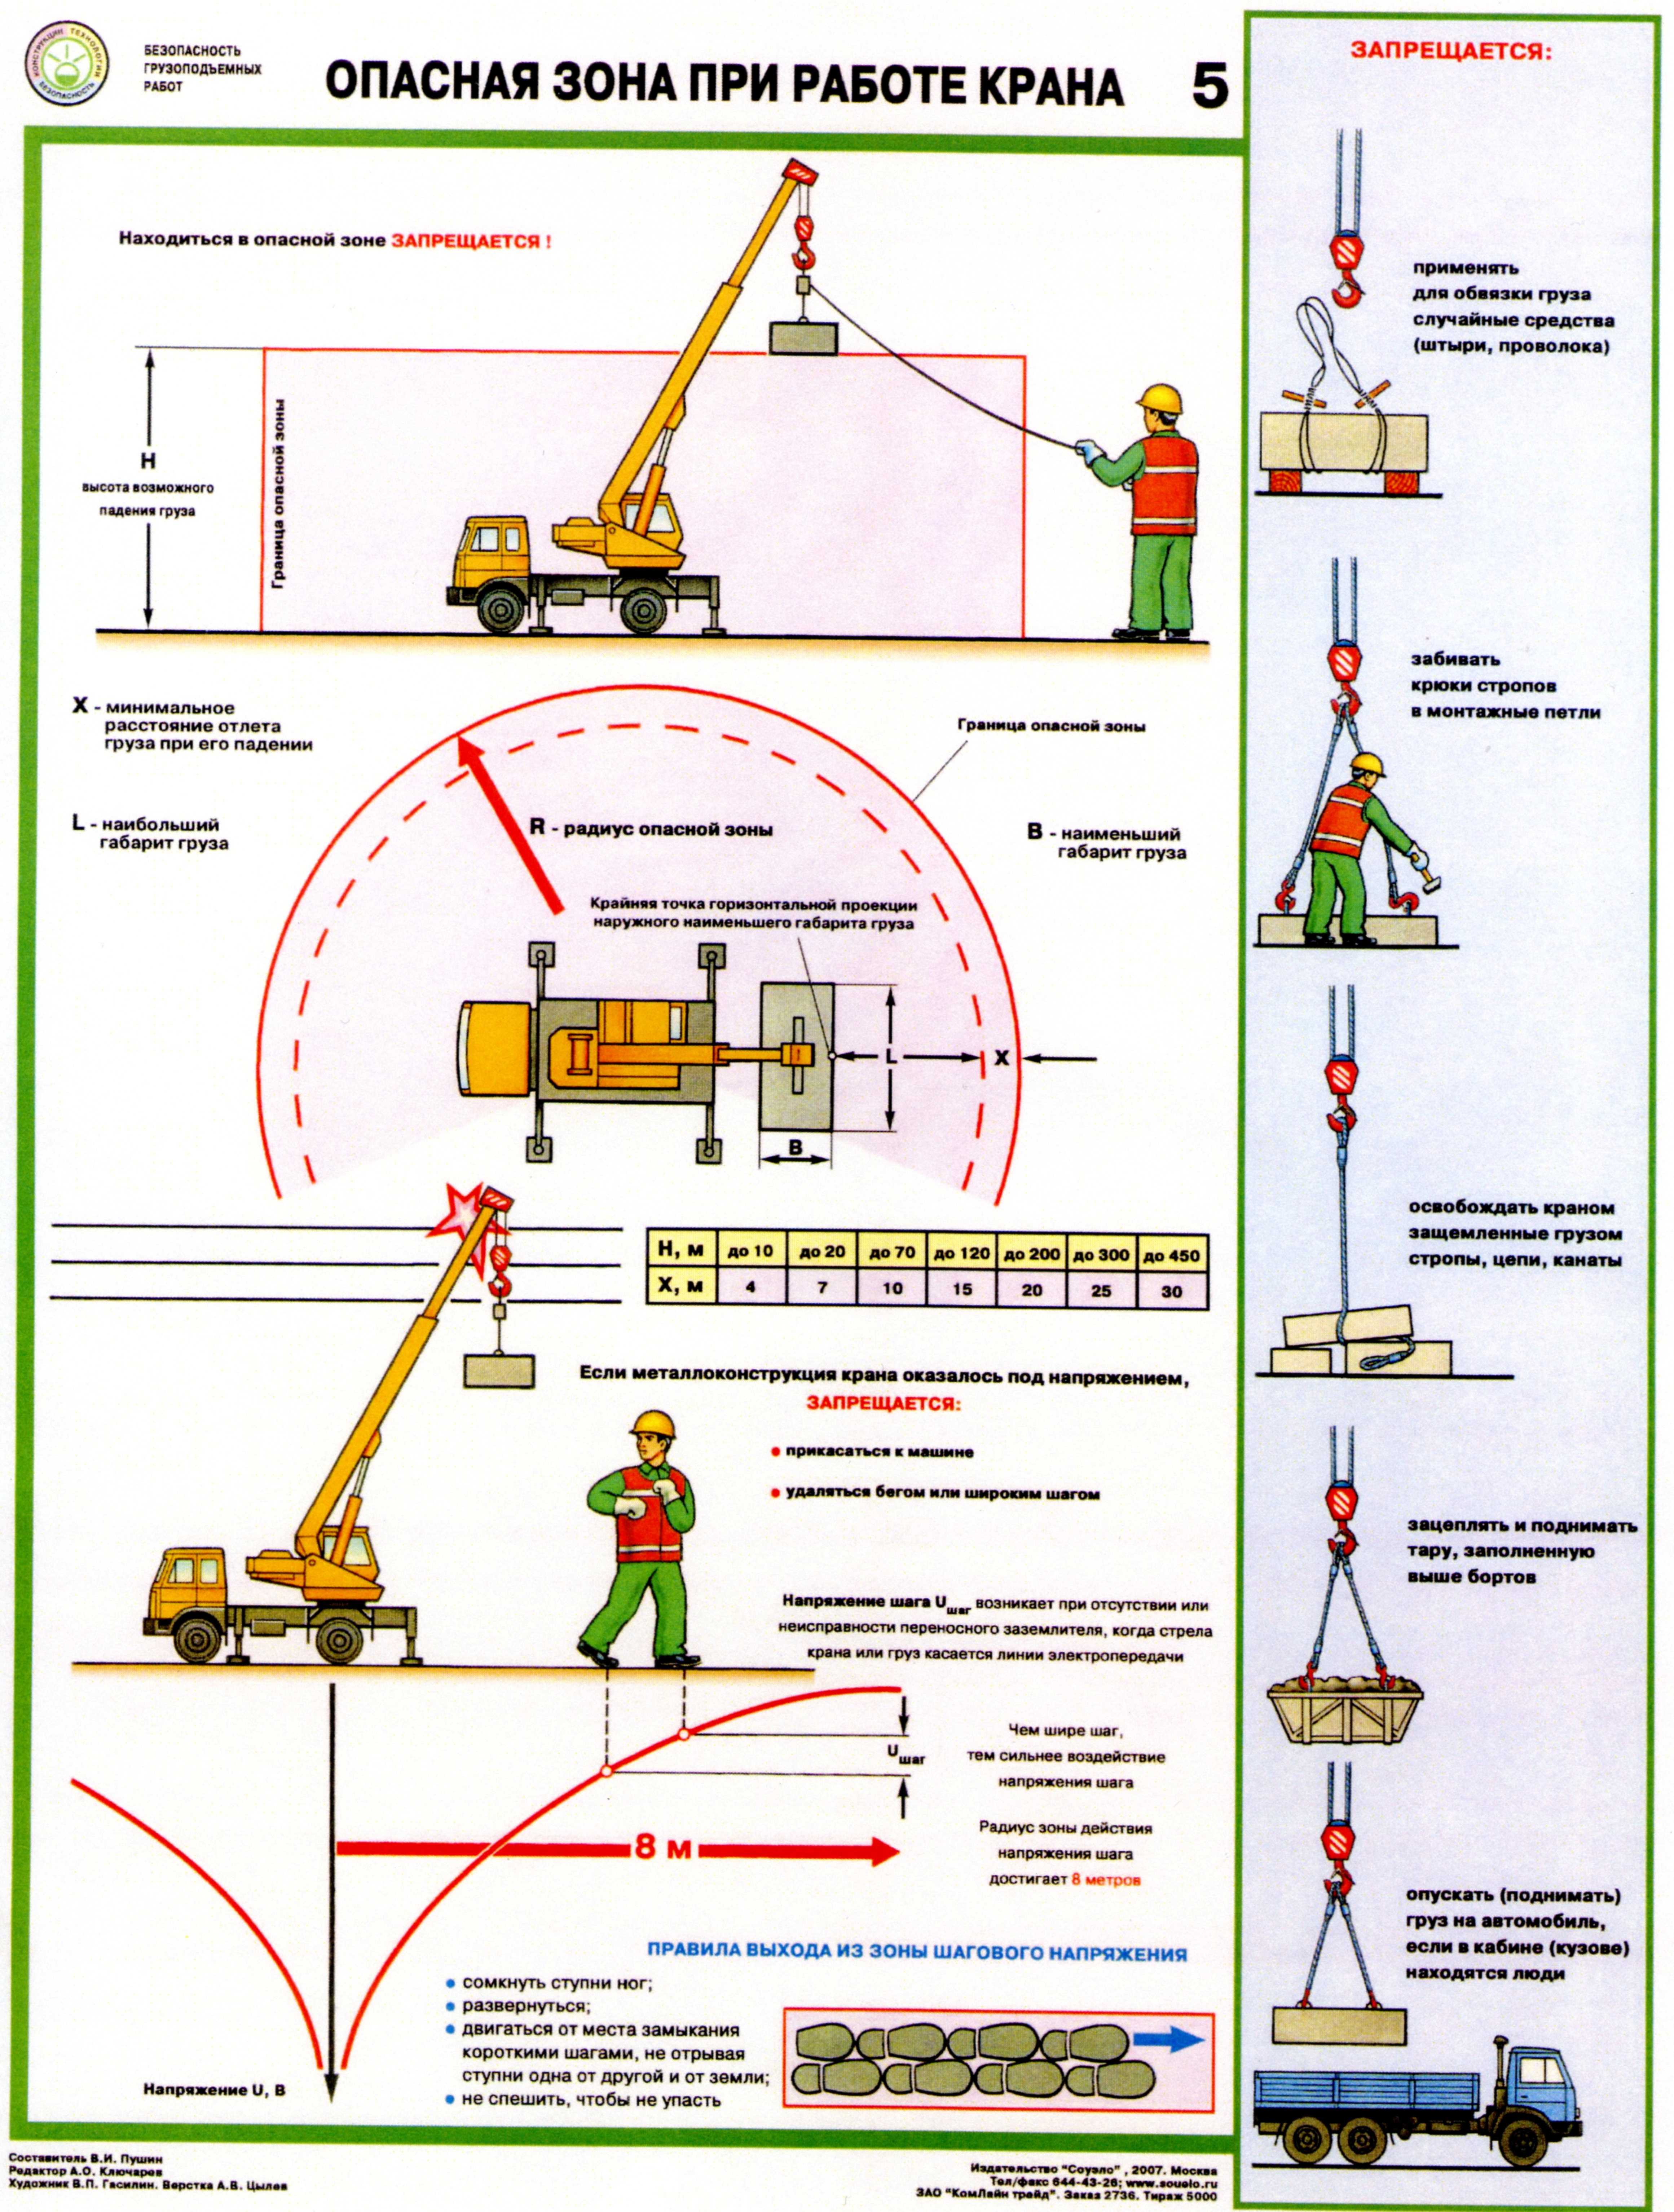 Инструкция Машиниста Станции Водоподготовки, Опасные Производственные Факторы